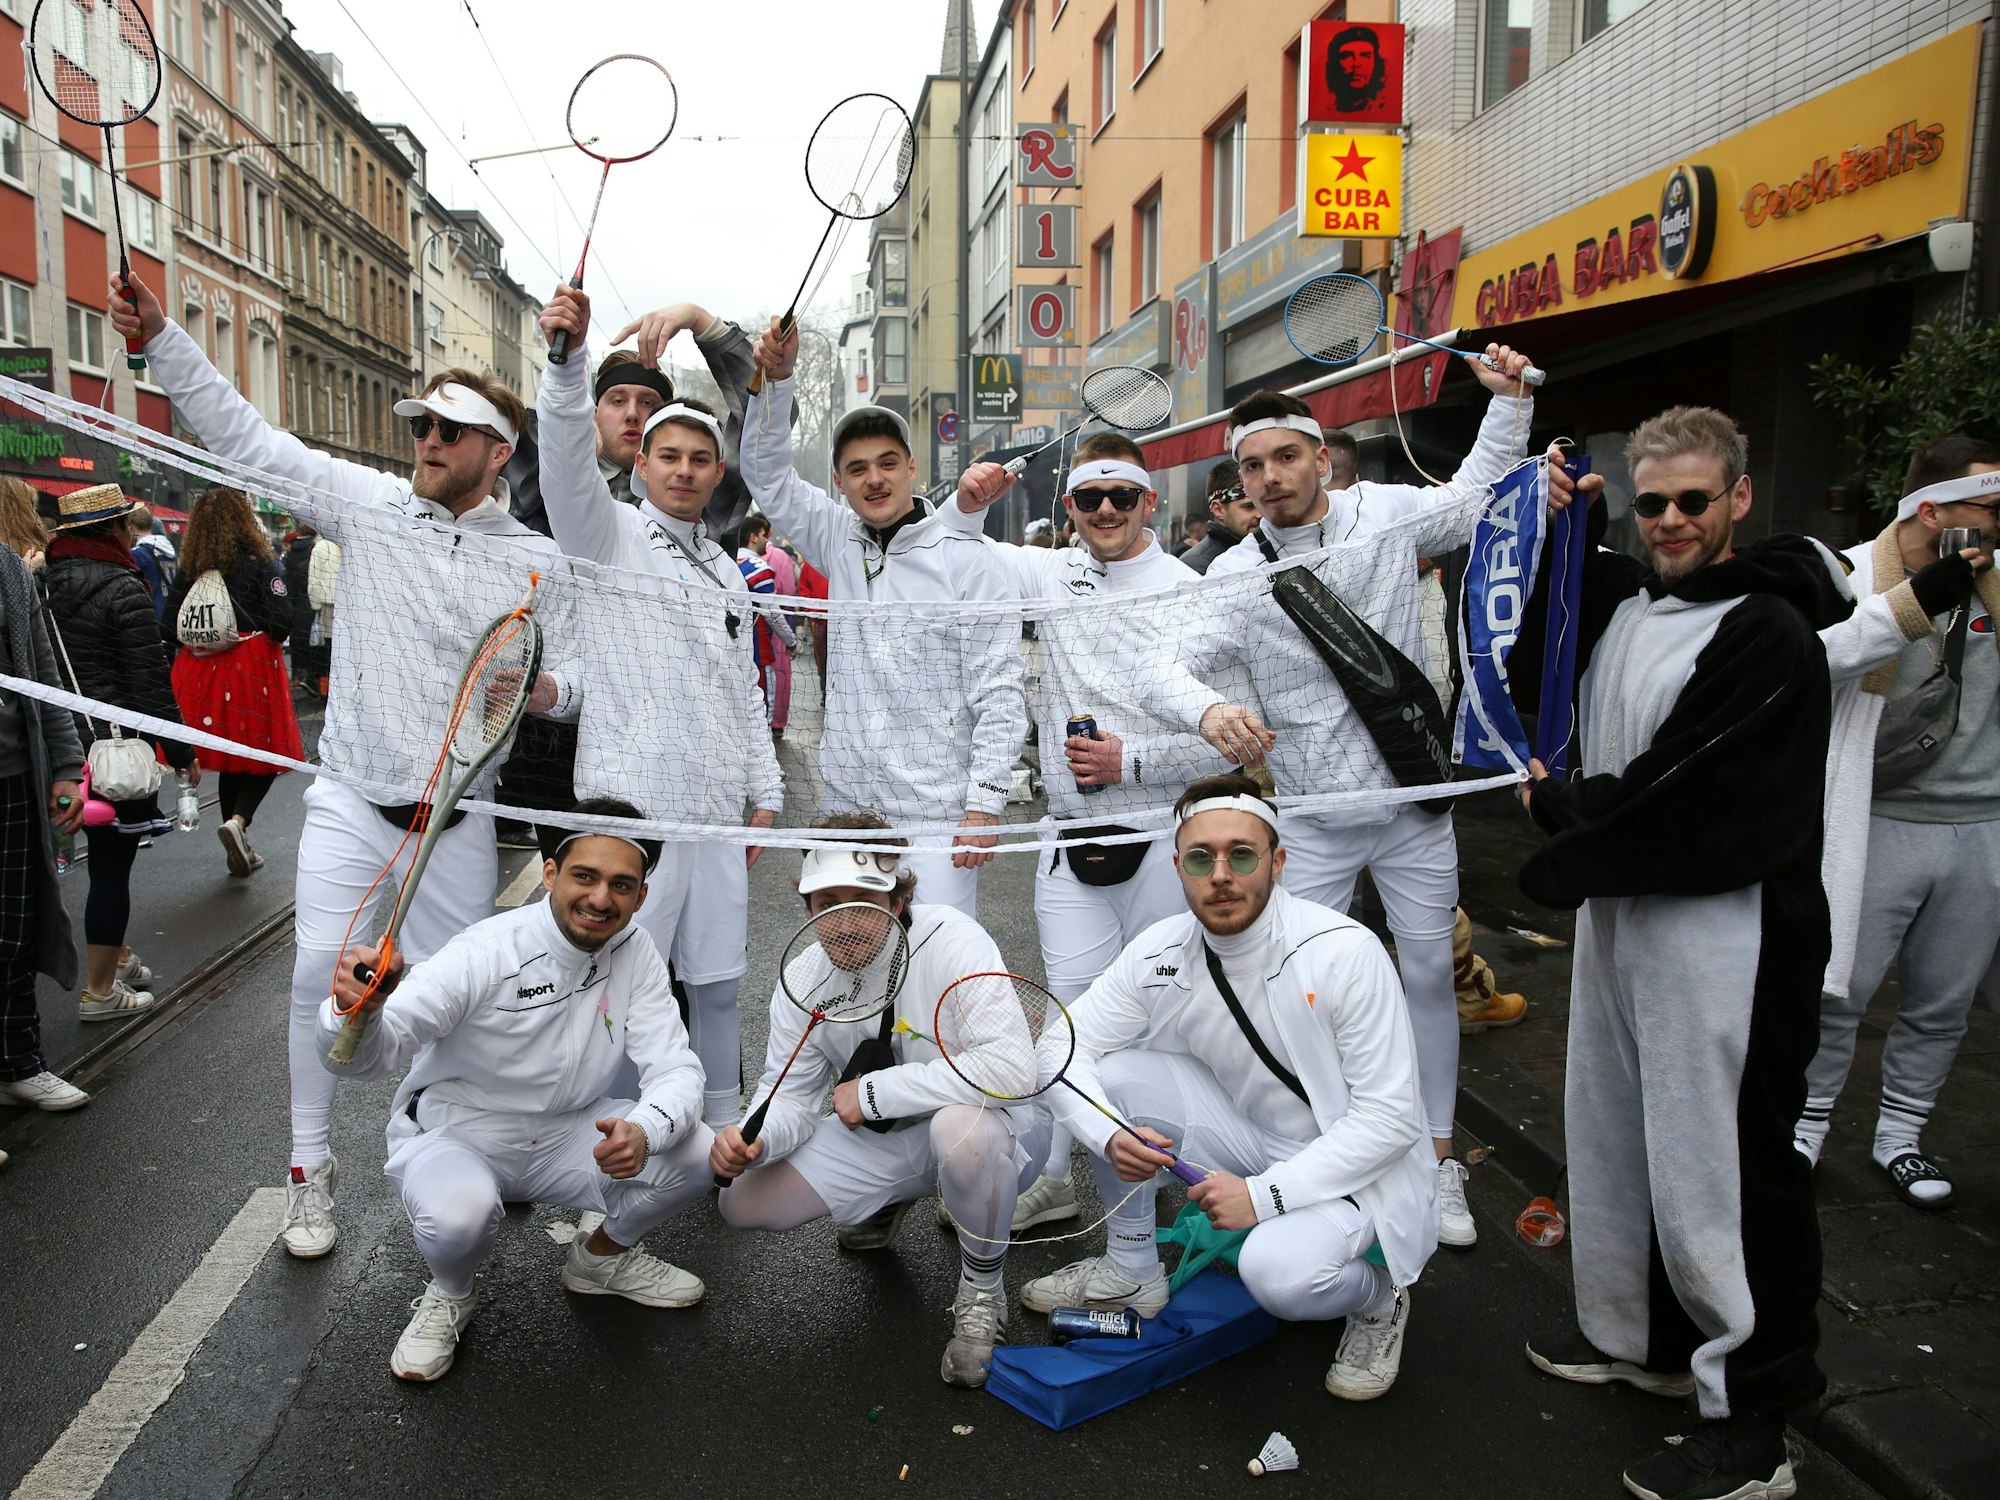 Die Schmetter-Linie aus Troisdorf: Die Jungsgruppe glänzte im Februar 2020 auf der Zülpicher Straße mit ihrem Gruppenkostüm rund um das Thema Badminton.